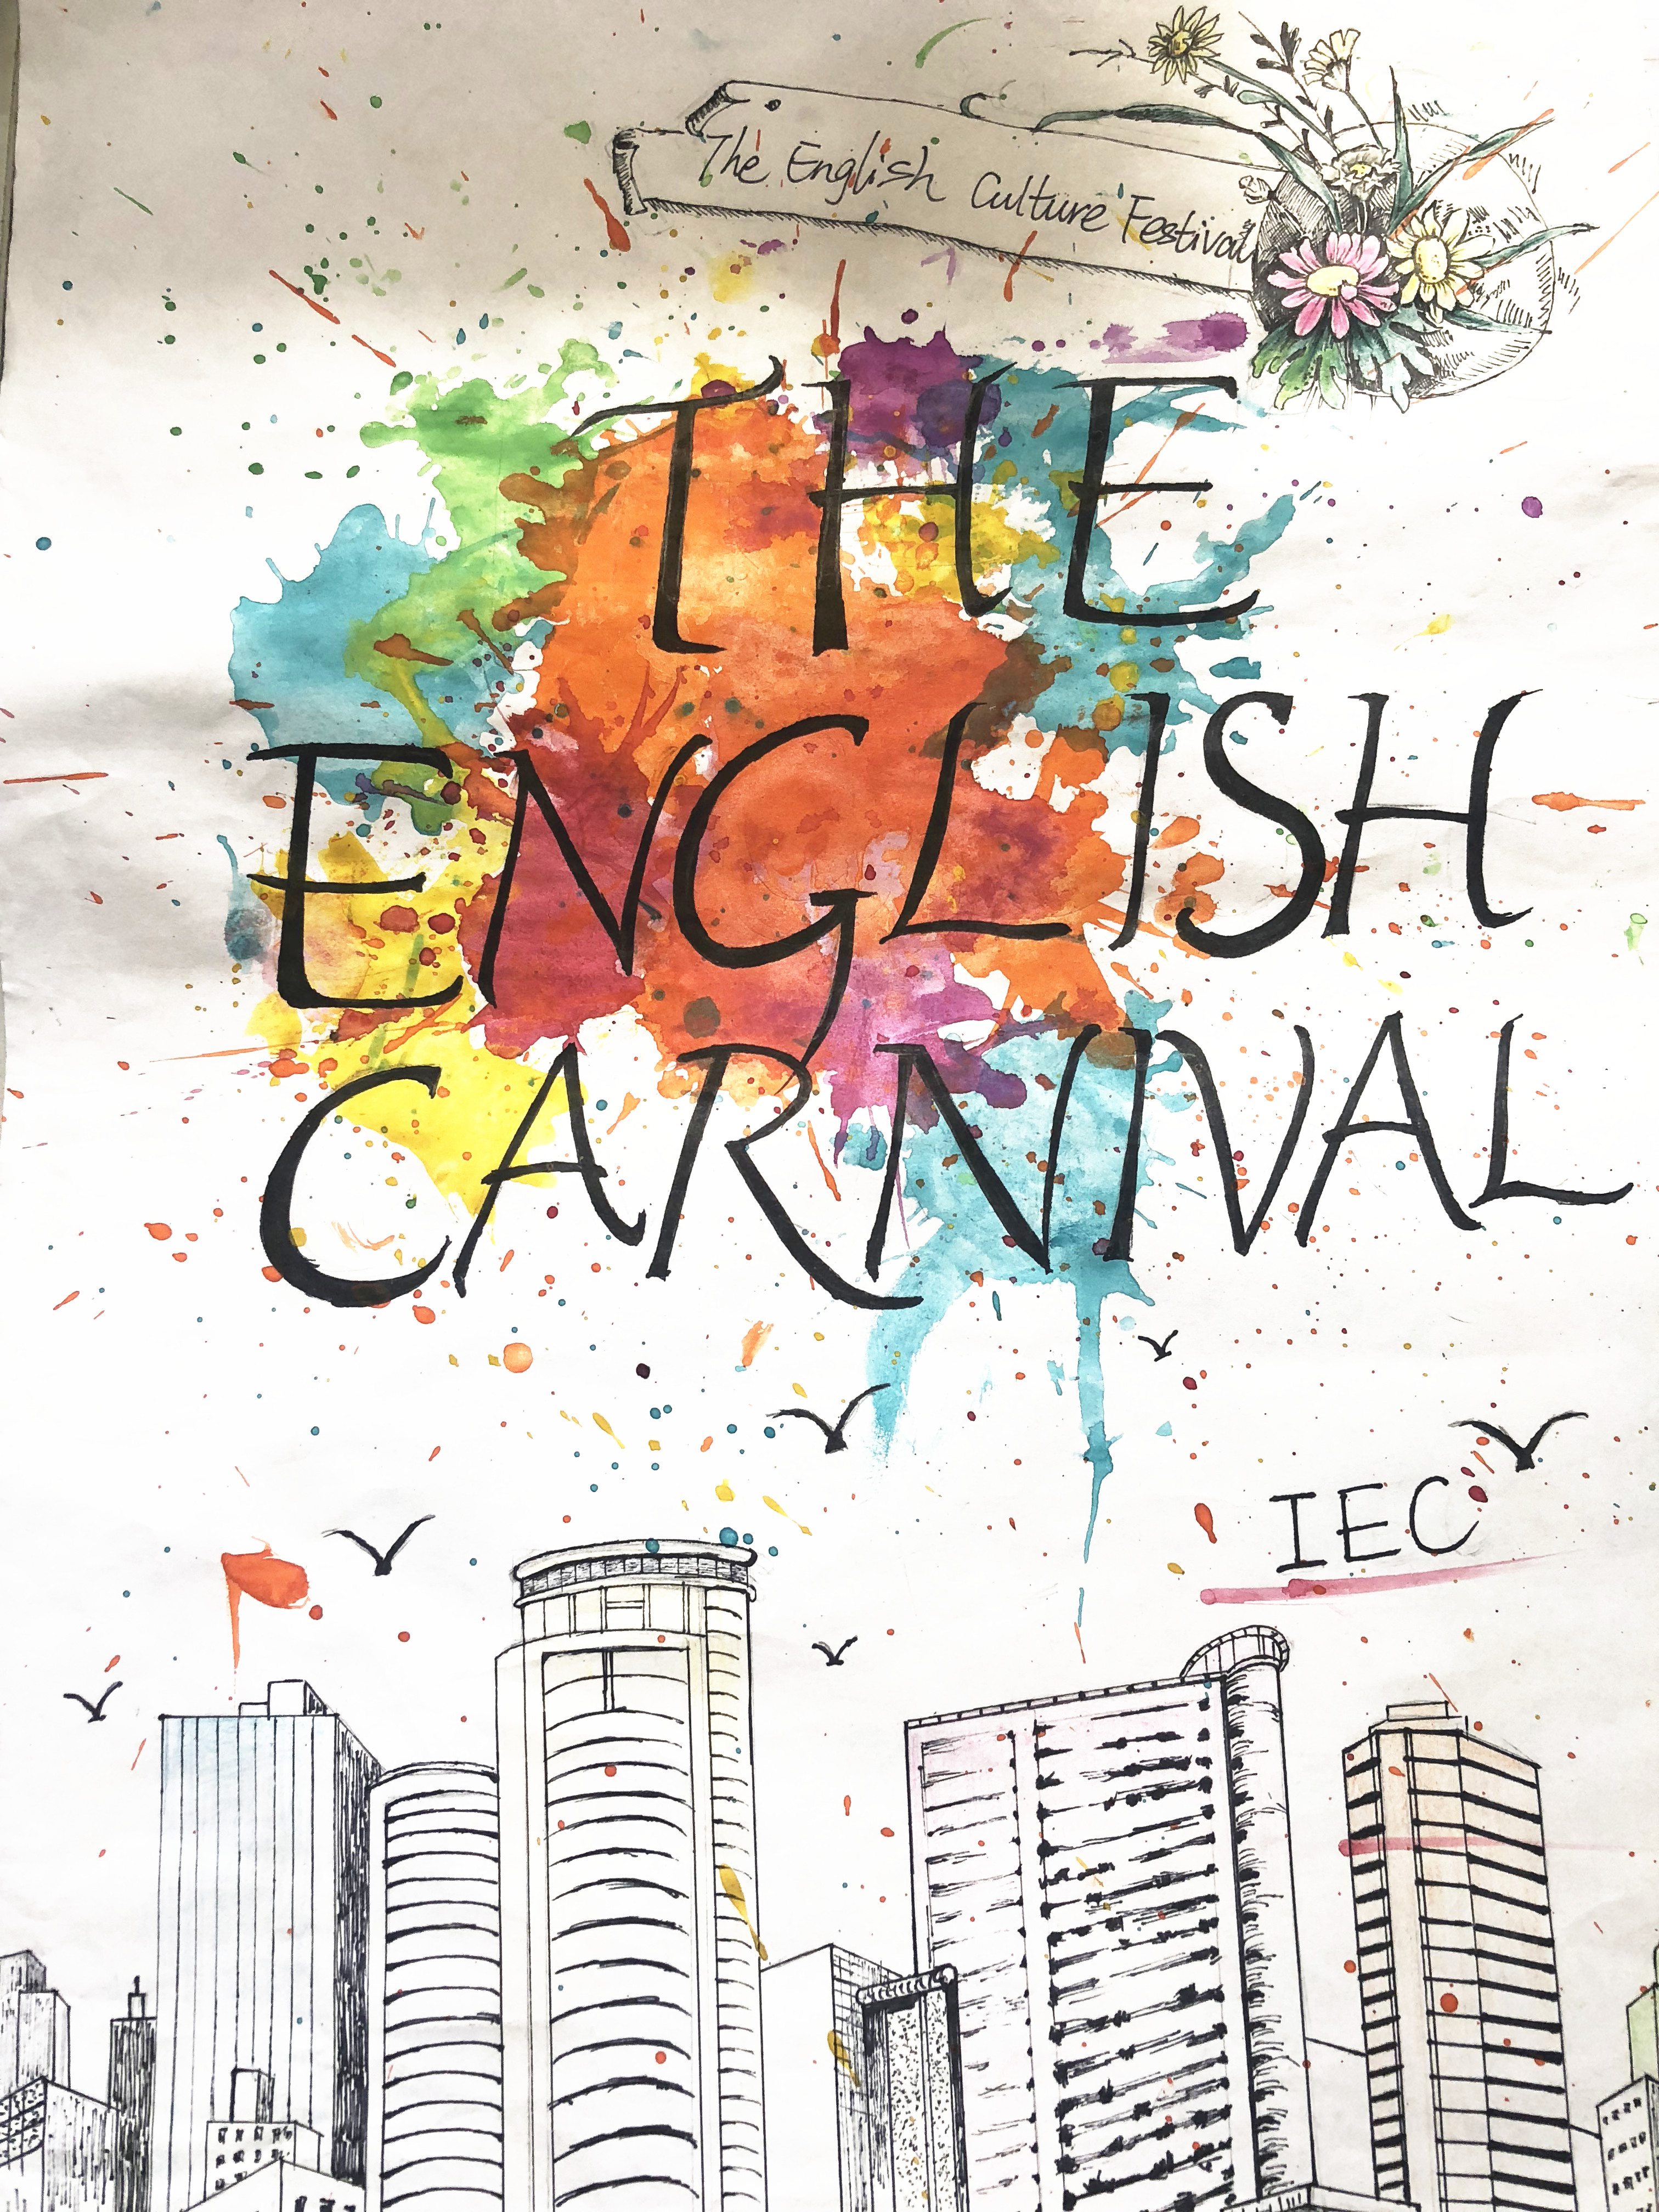 正学风聚能量国际教育学院举办英文书法海报设计活动